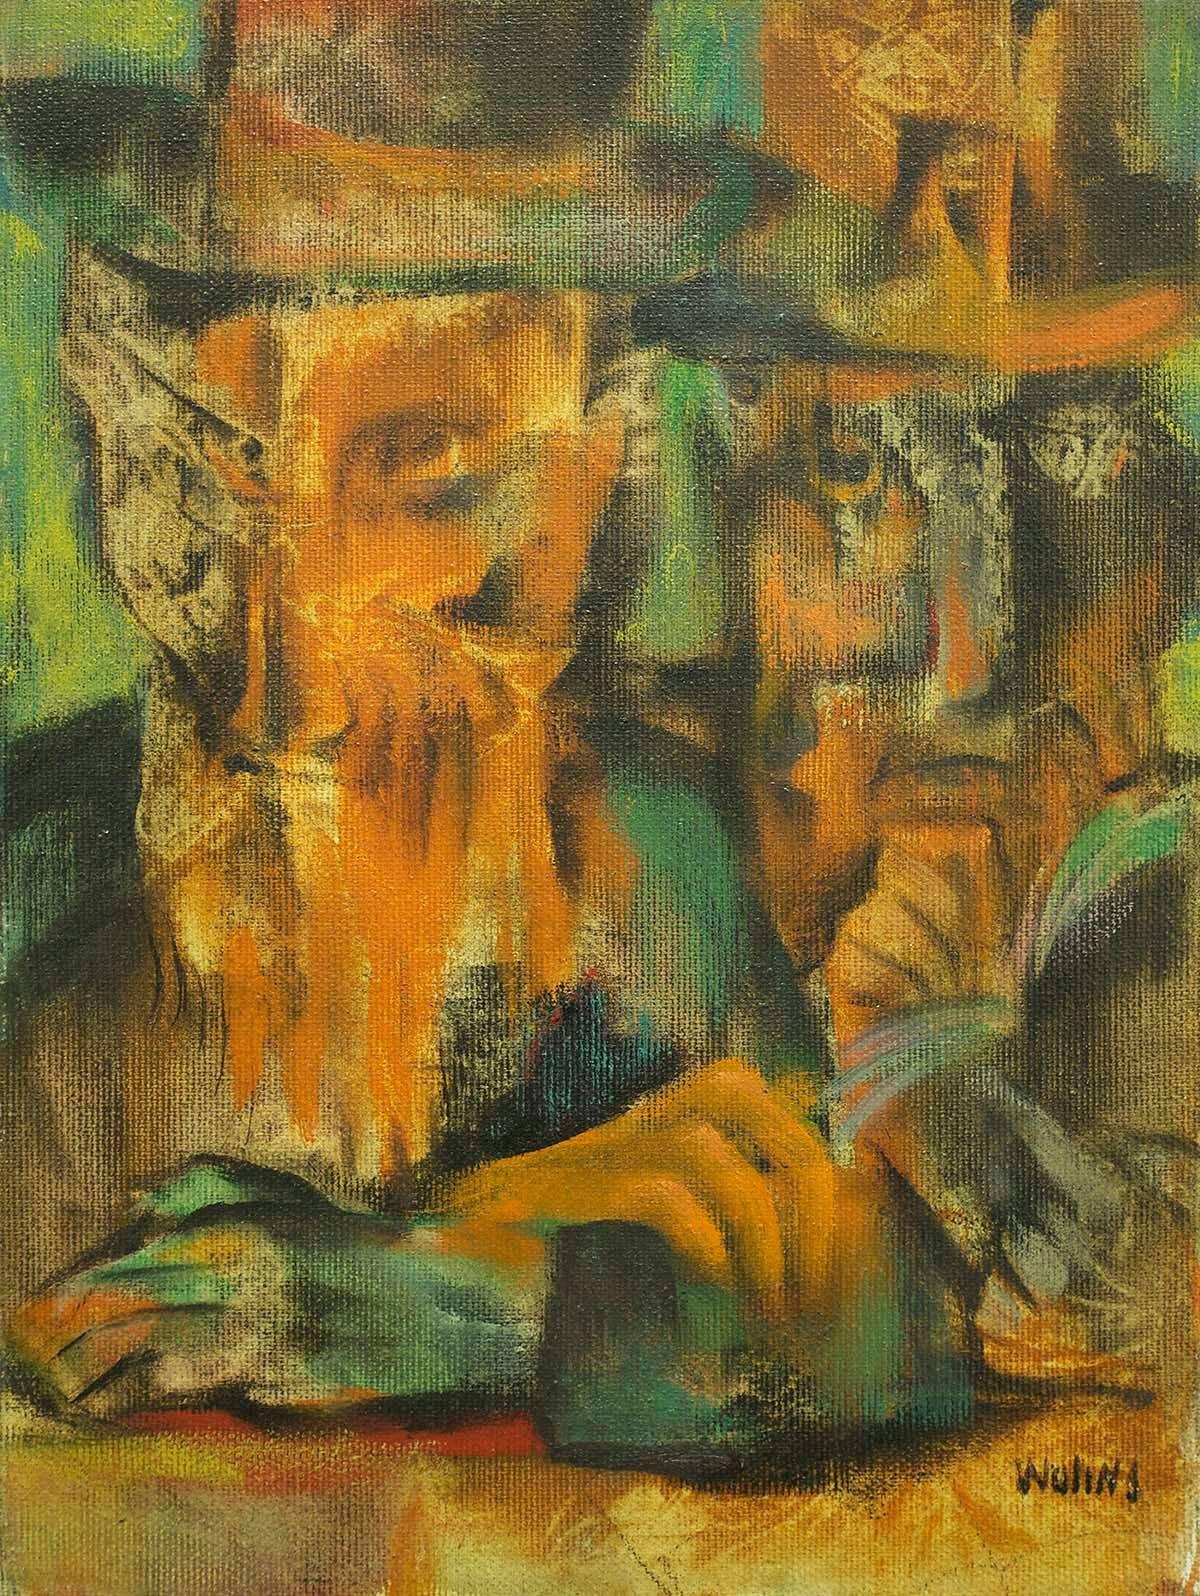 Figurative Painting Joseph Wolins - Les kabbalistes, les lapins judaïques, peinture moderniste colorée